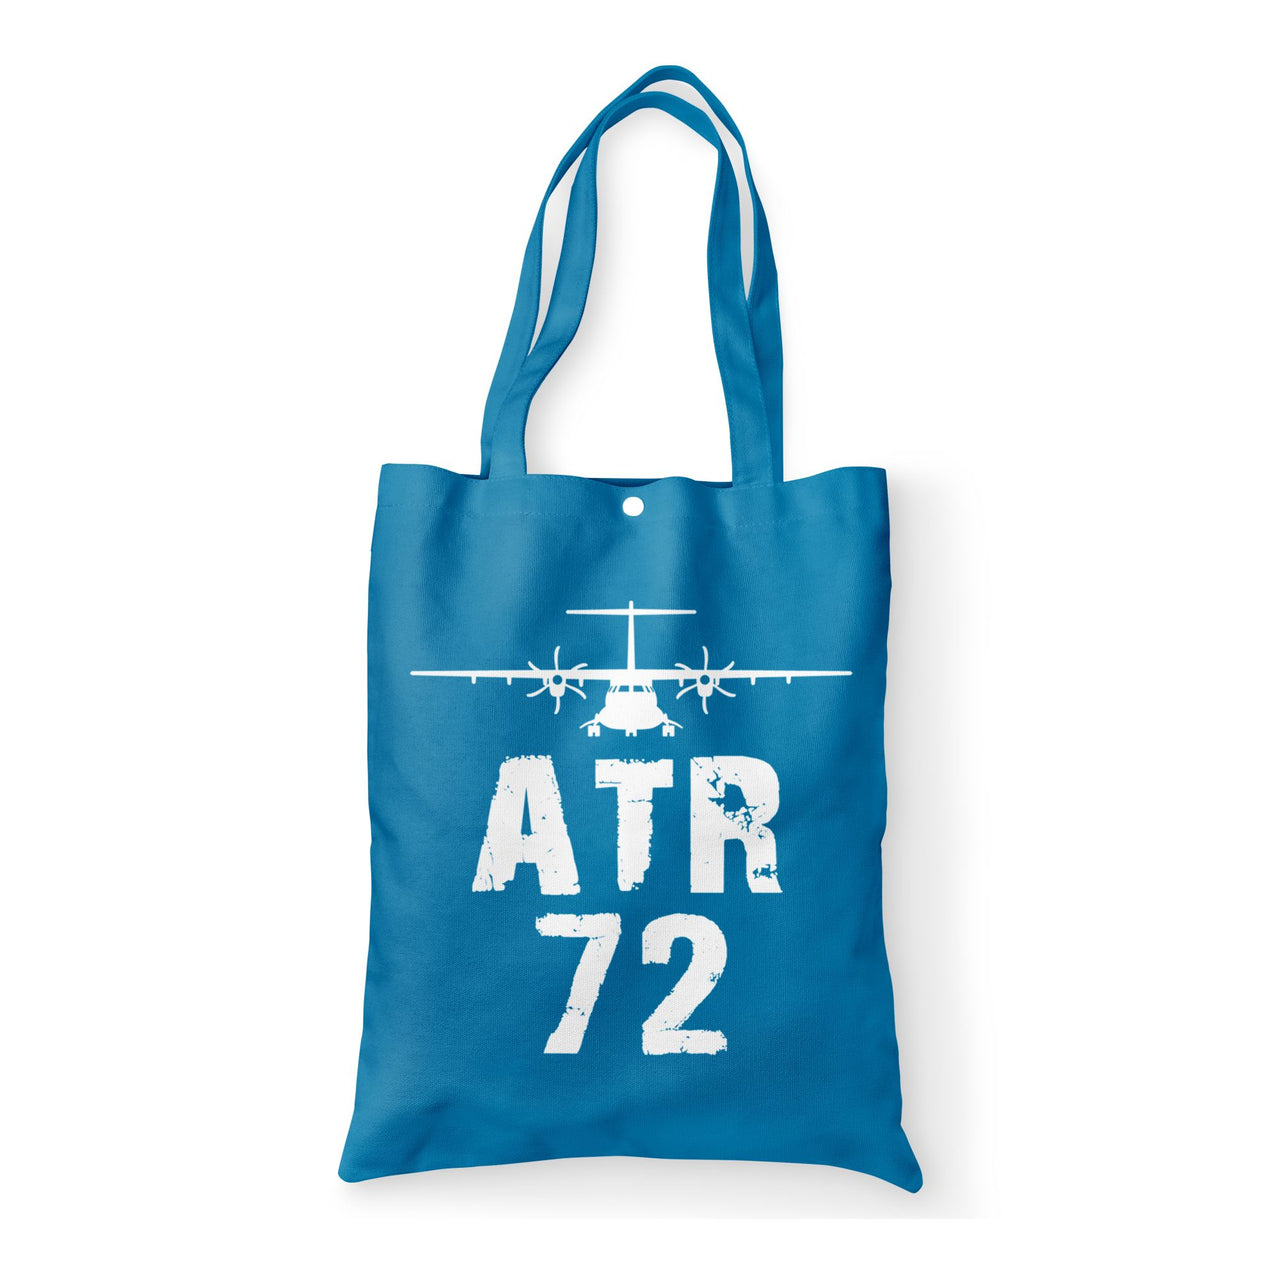 ATR-72 & Plane Designed Tote Bags